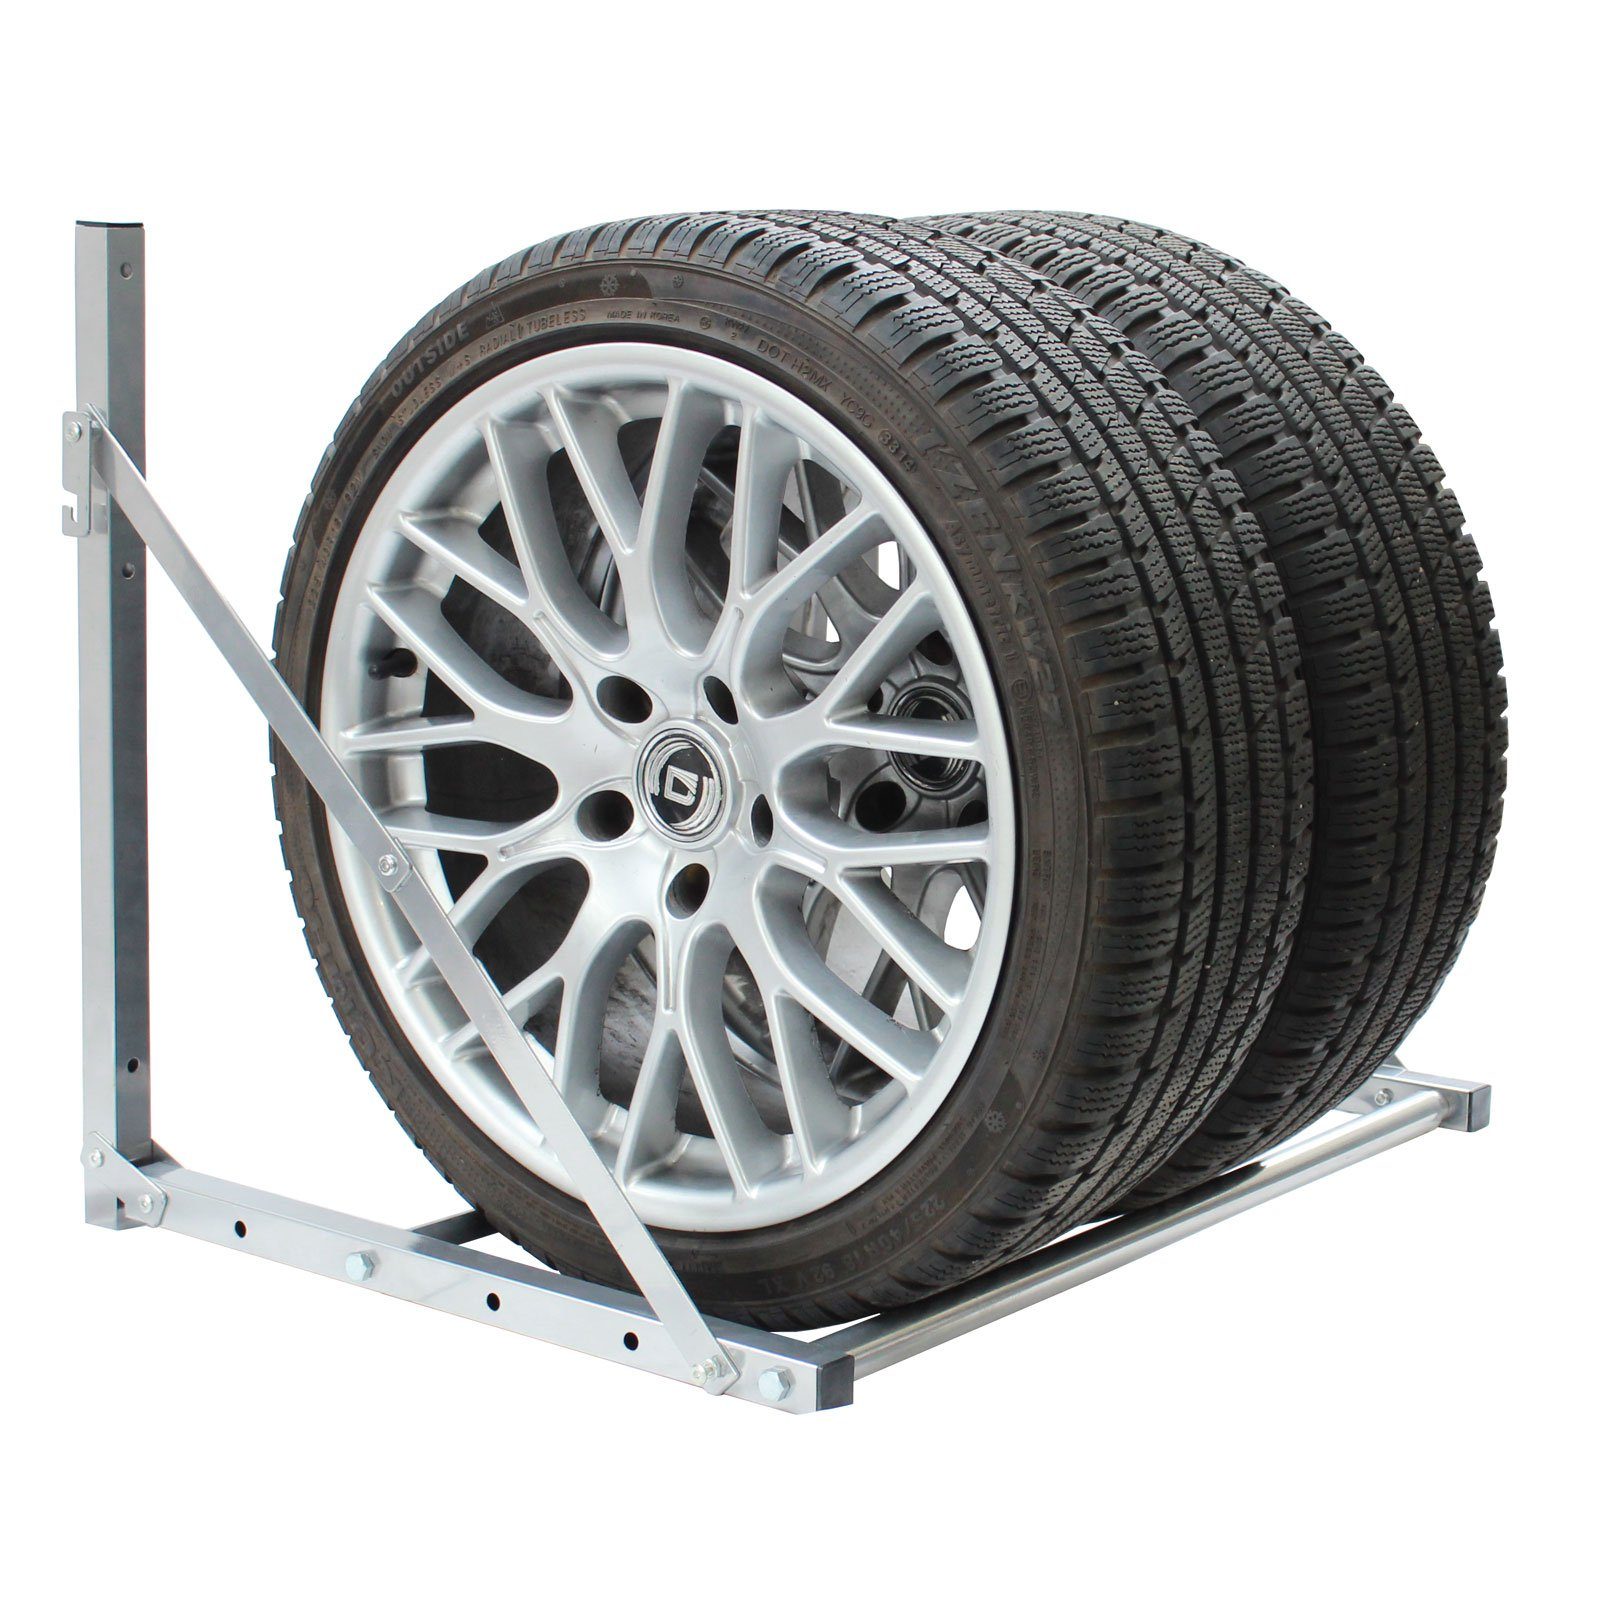 TRUTZHOLM Wandregal ausziehbar für 136 Traglast Reifenwandhalterung Räder kg 4